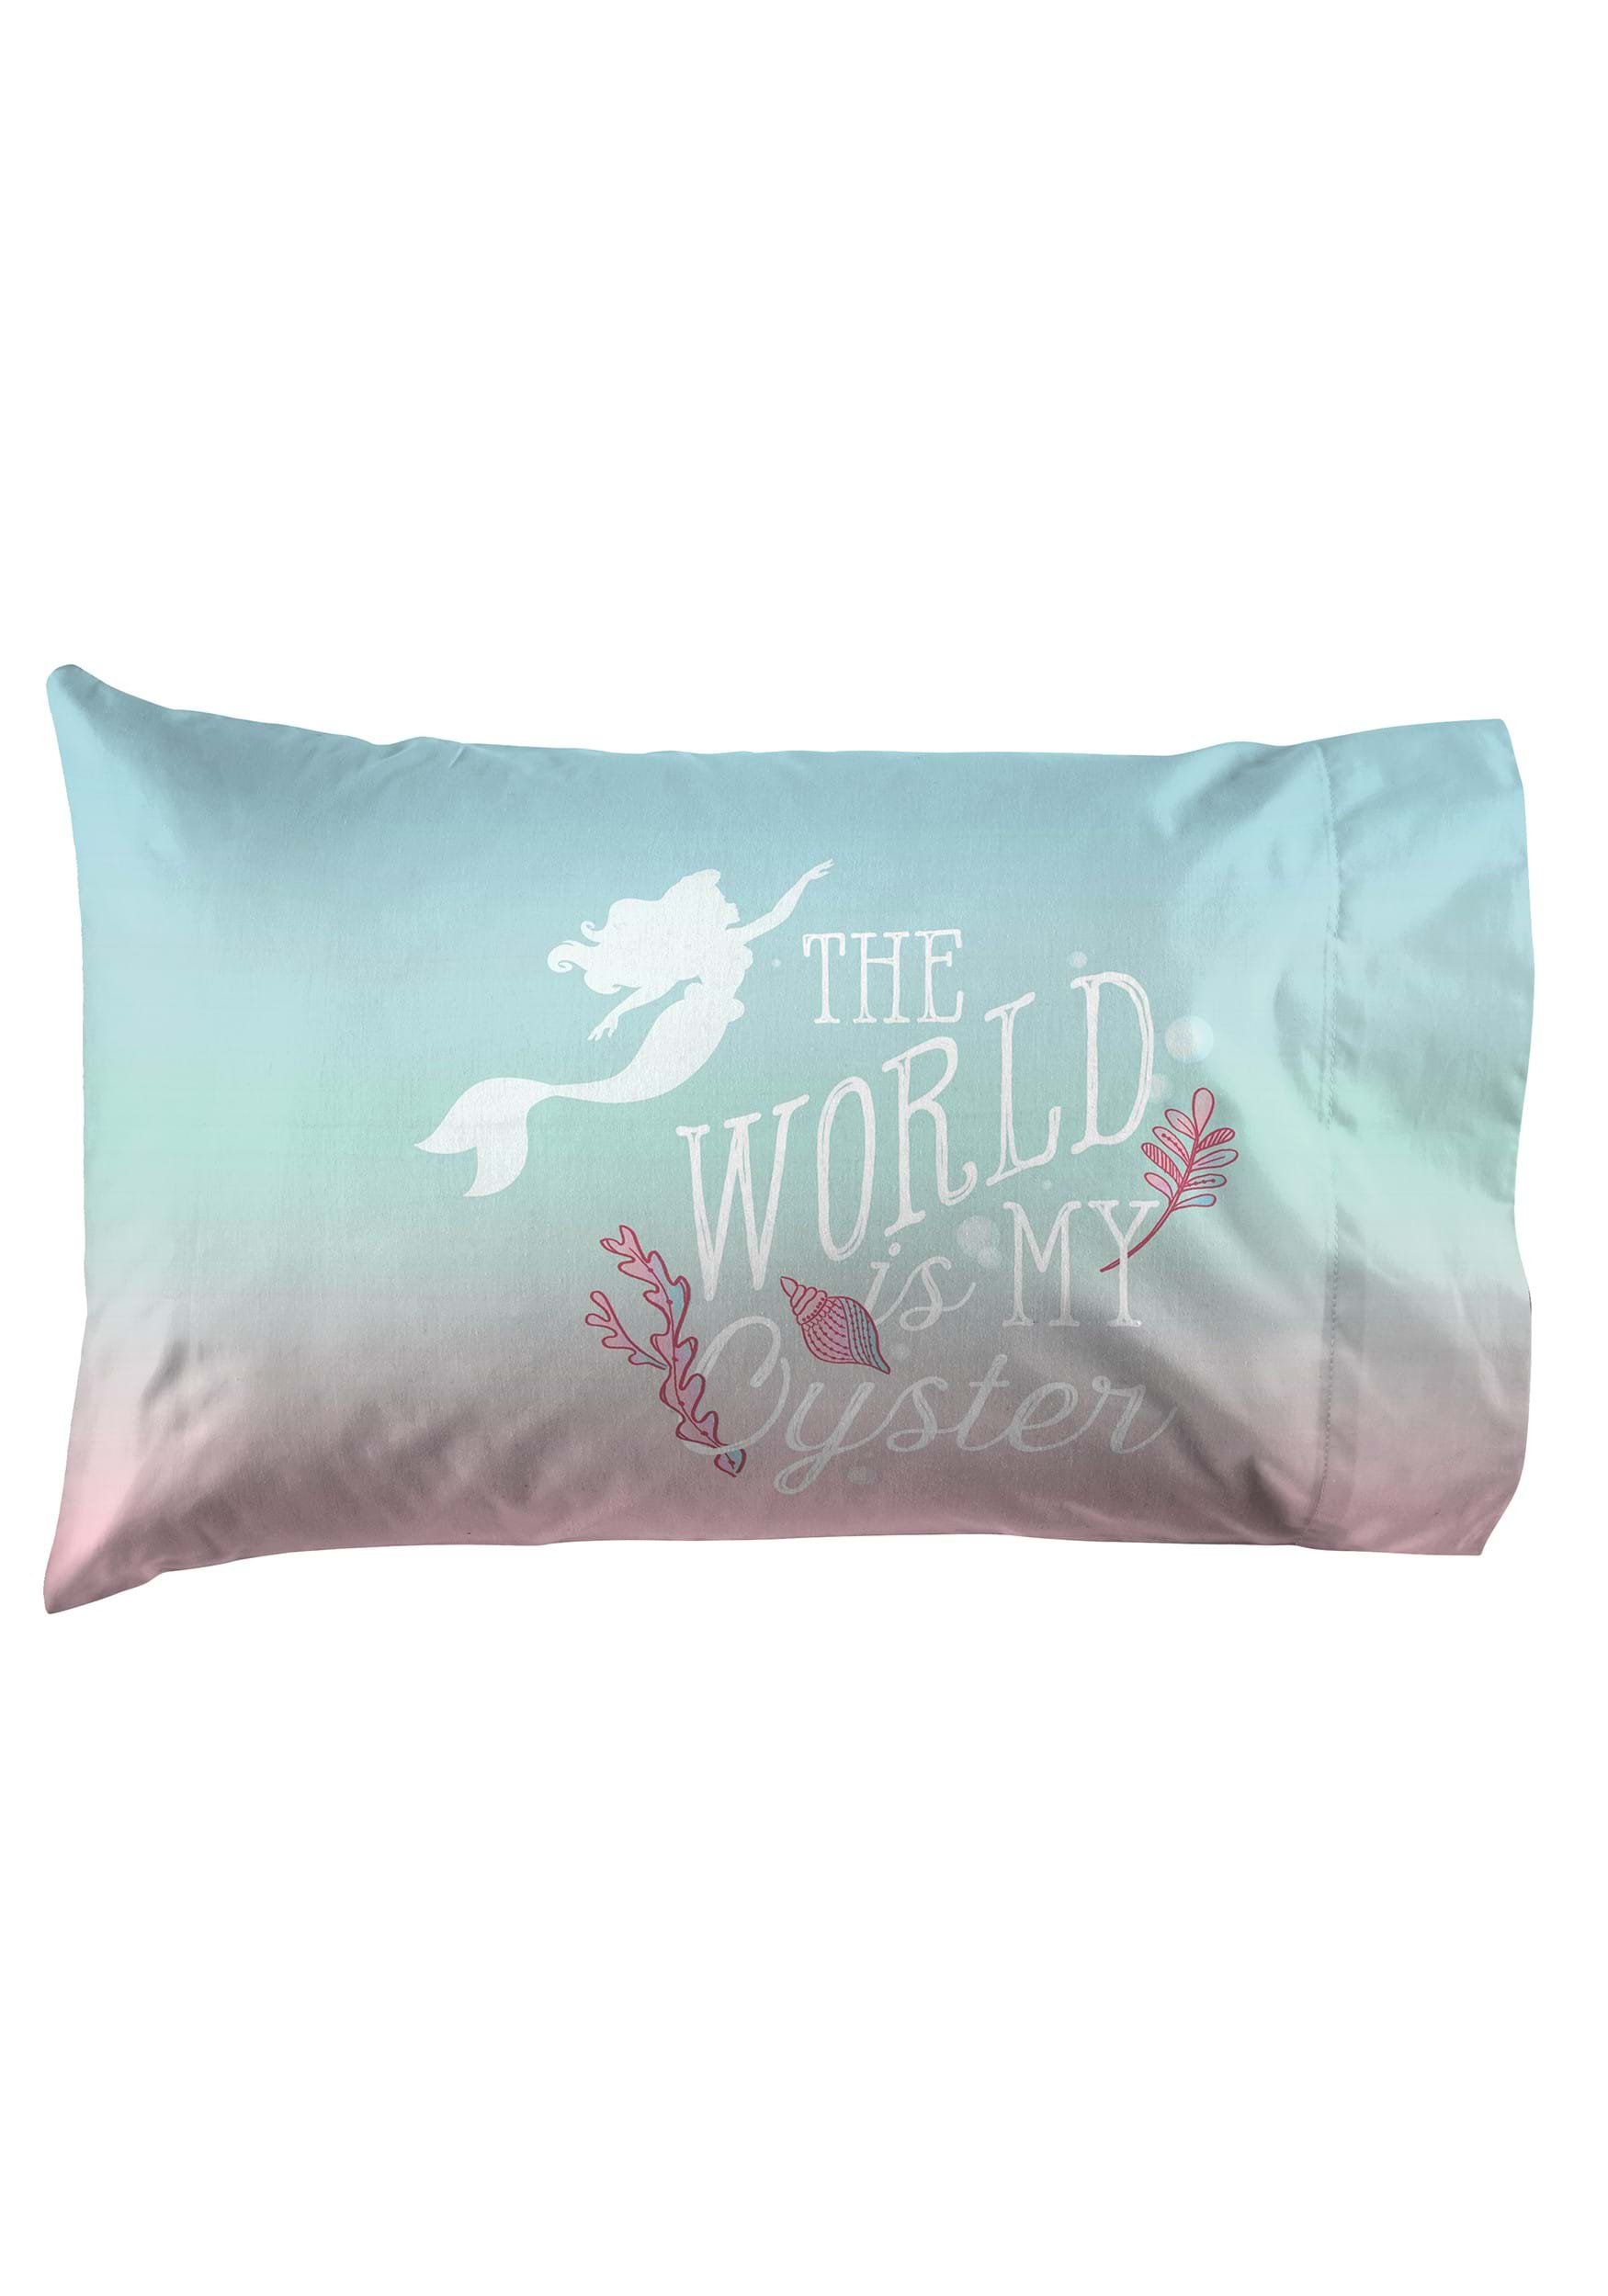 Disney Little Mermaid Full Comforter And Pillow Case Set